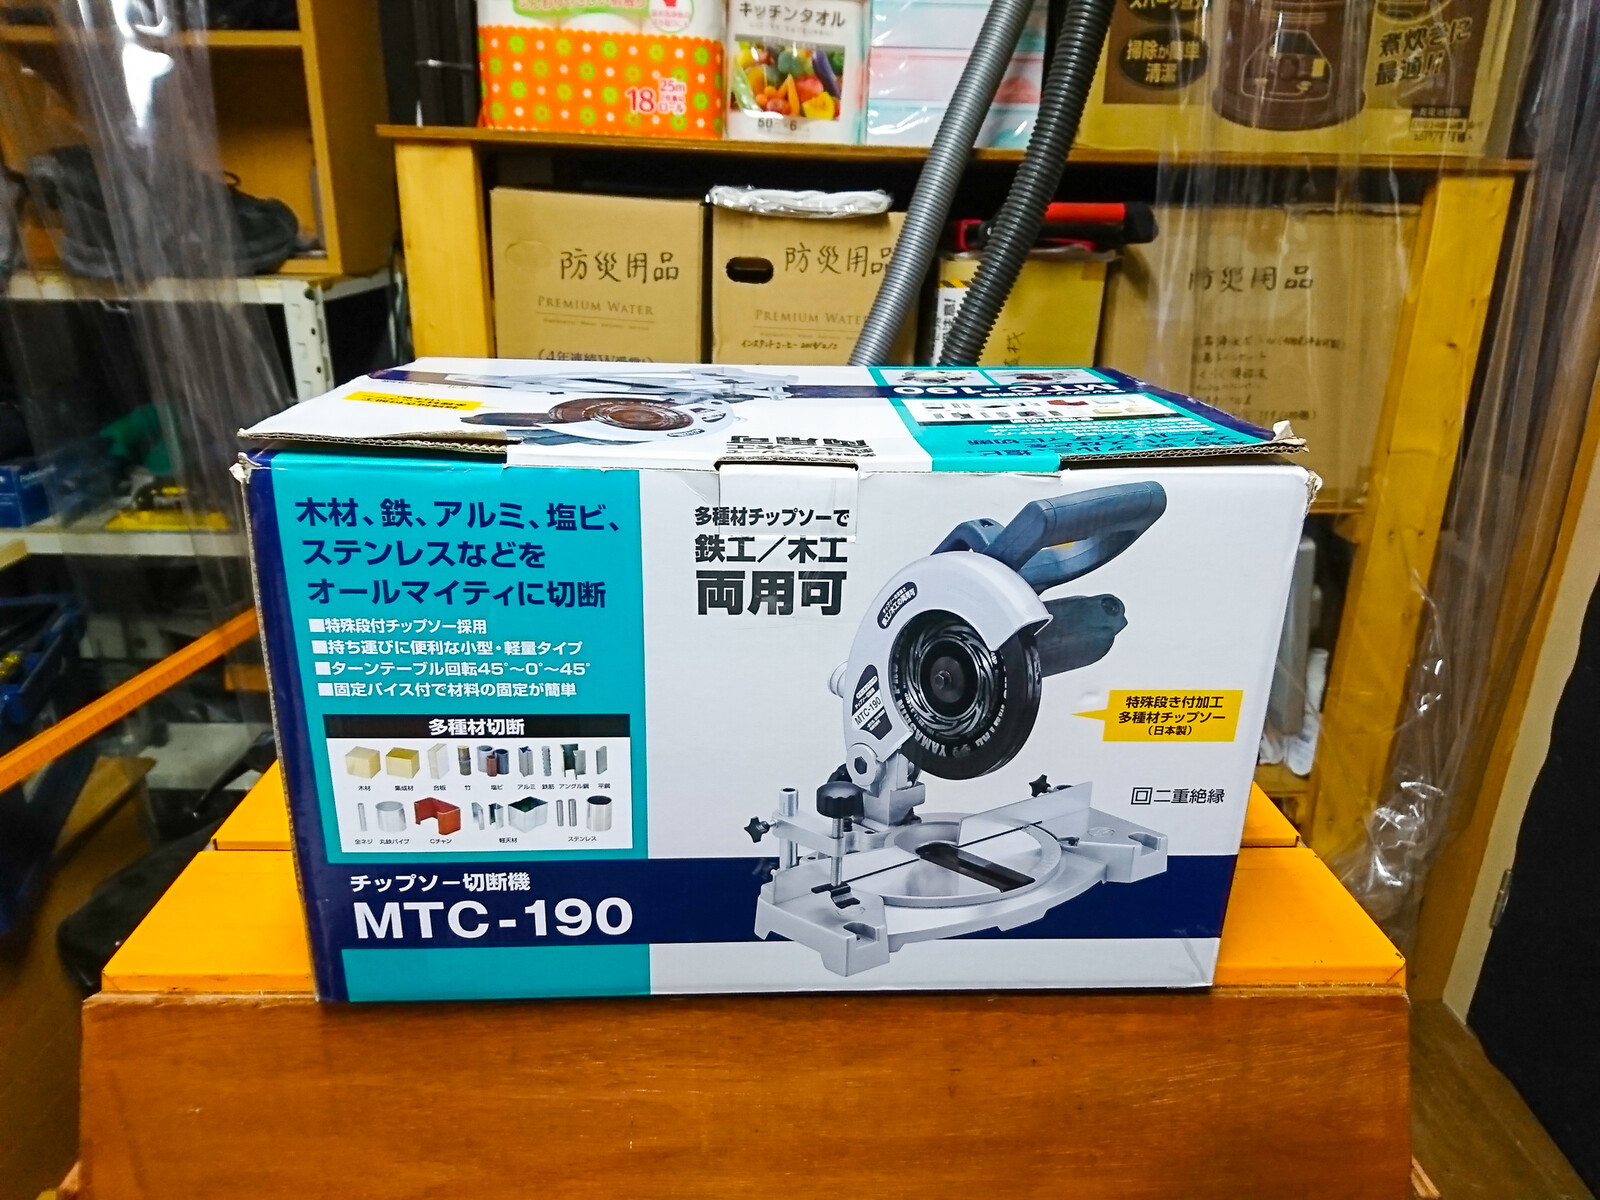 新興製作所 チップソー切断機 MTC-190 を購入 : 趣味の「写真、DIY